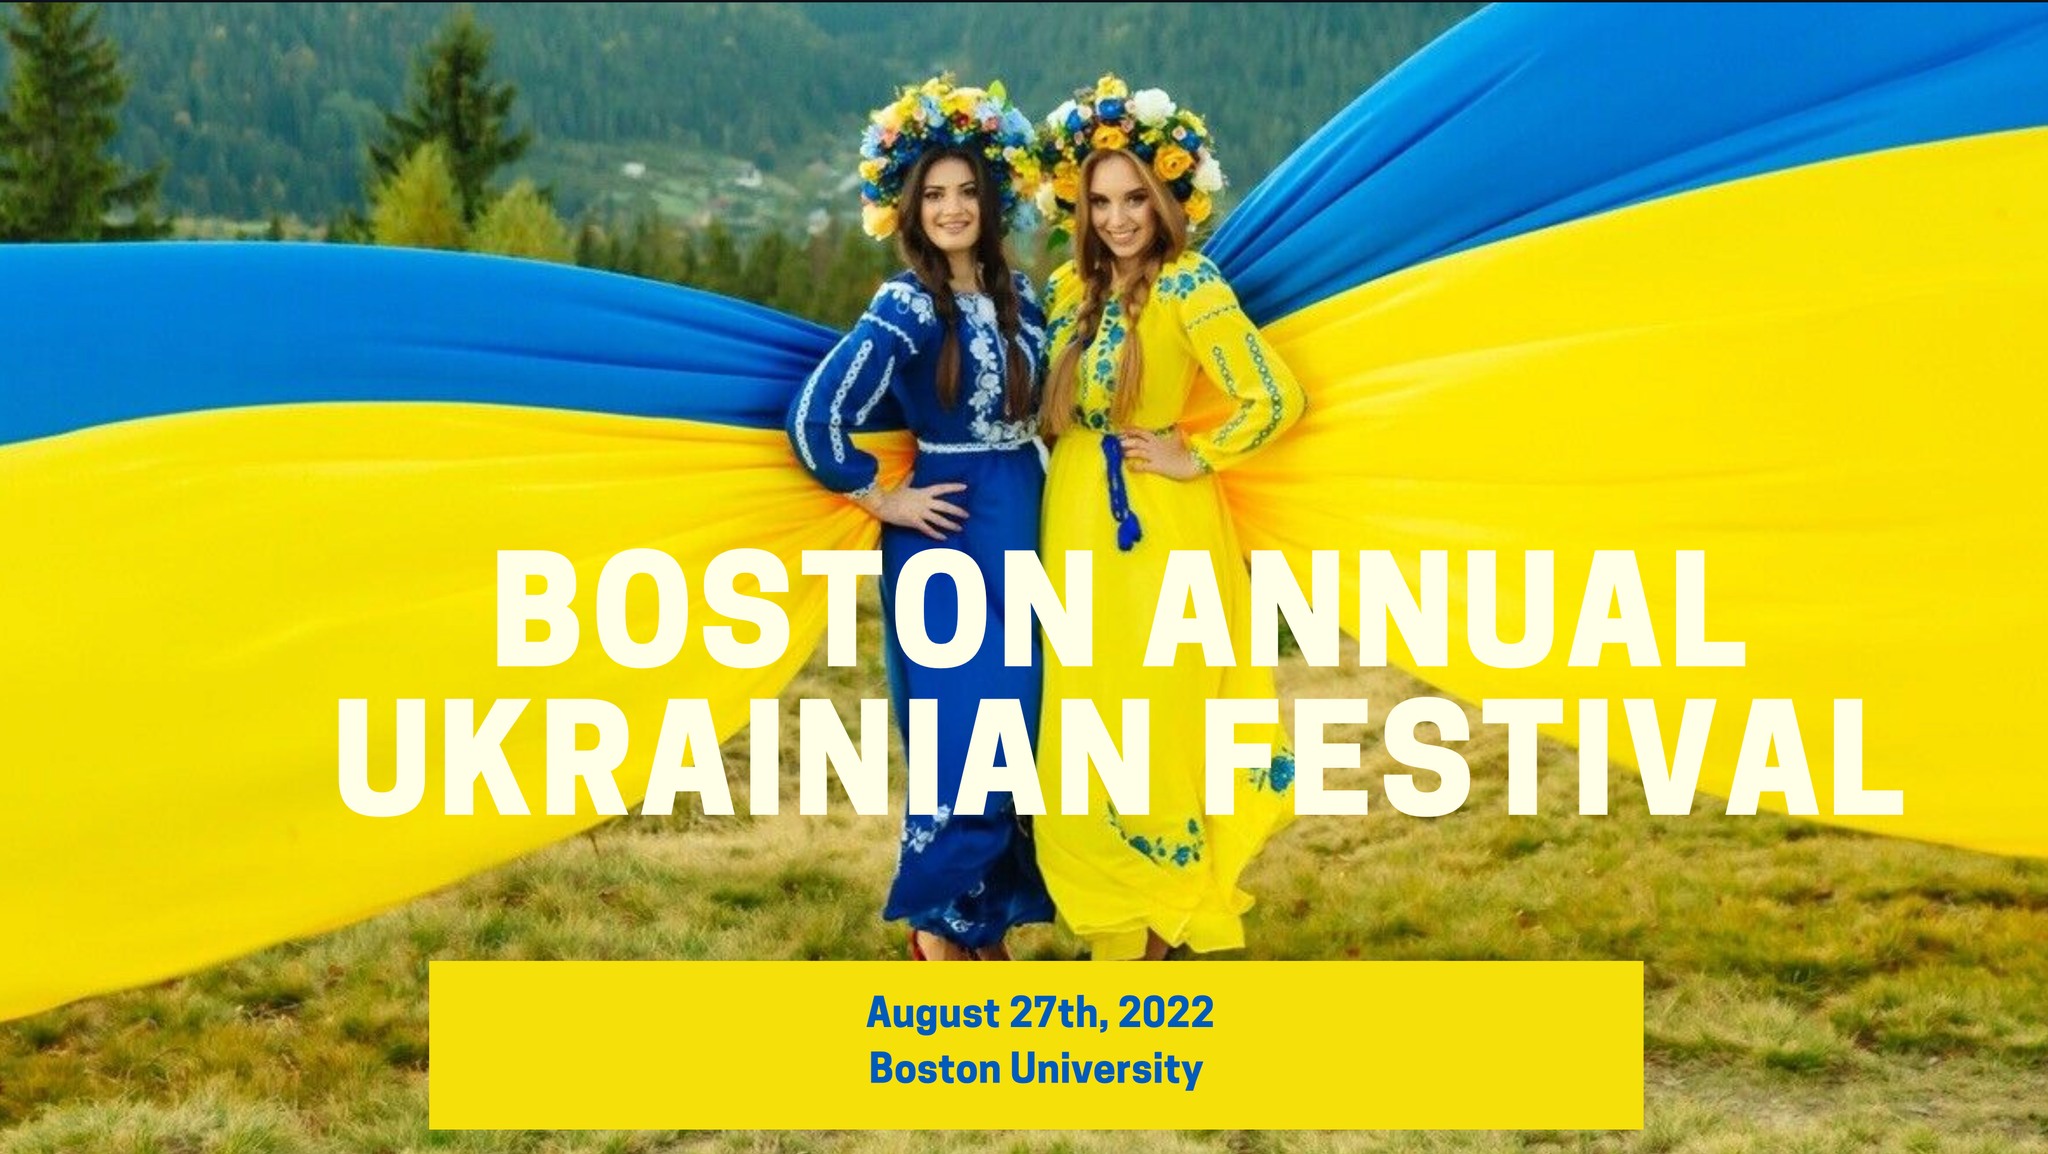 Boston Annual Ukrainian Festival (08/27/22) Center for the Study of